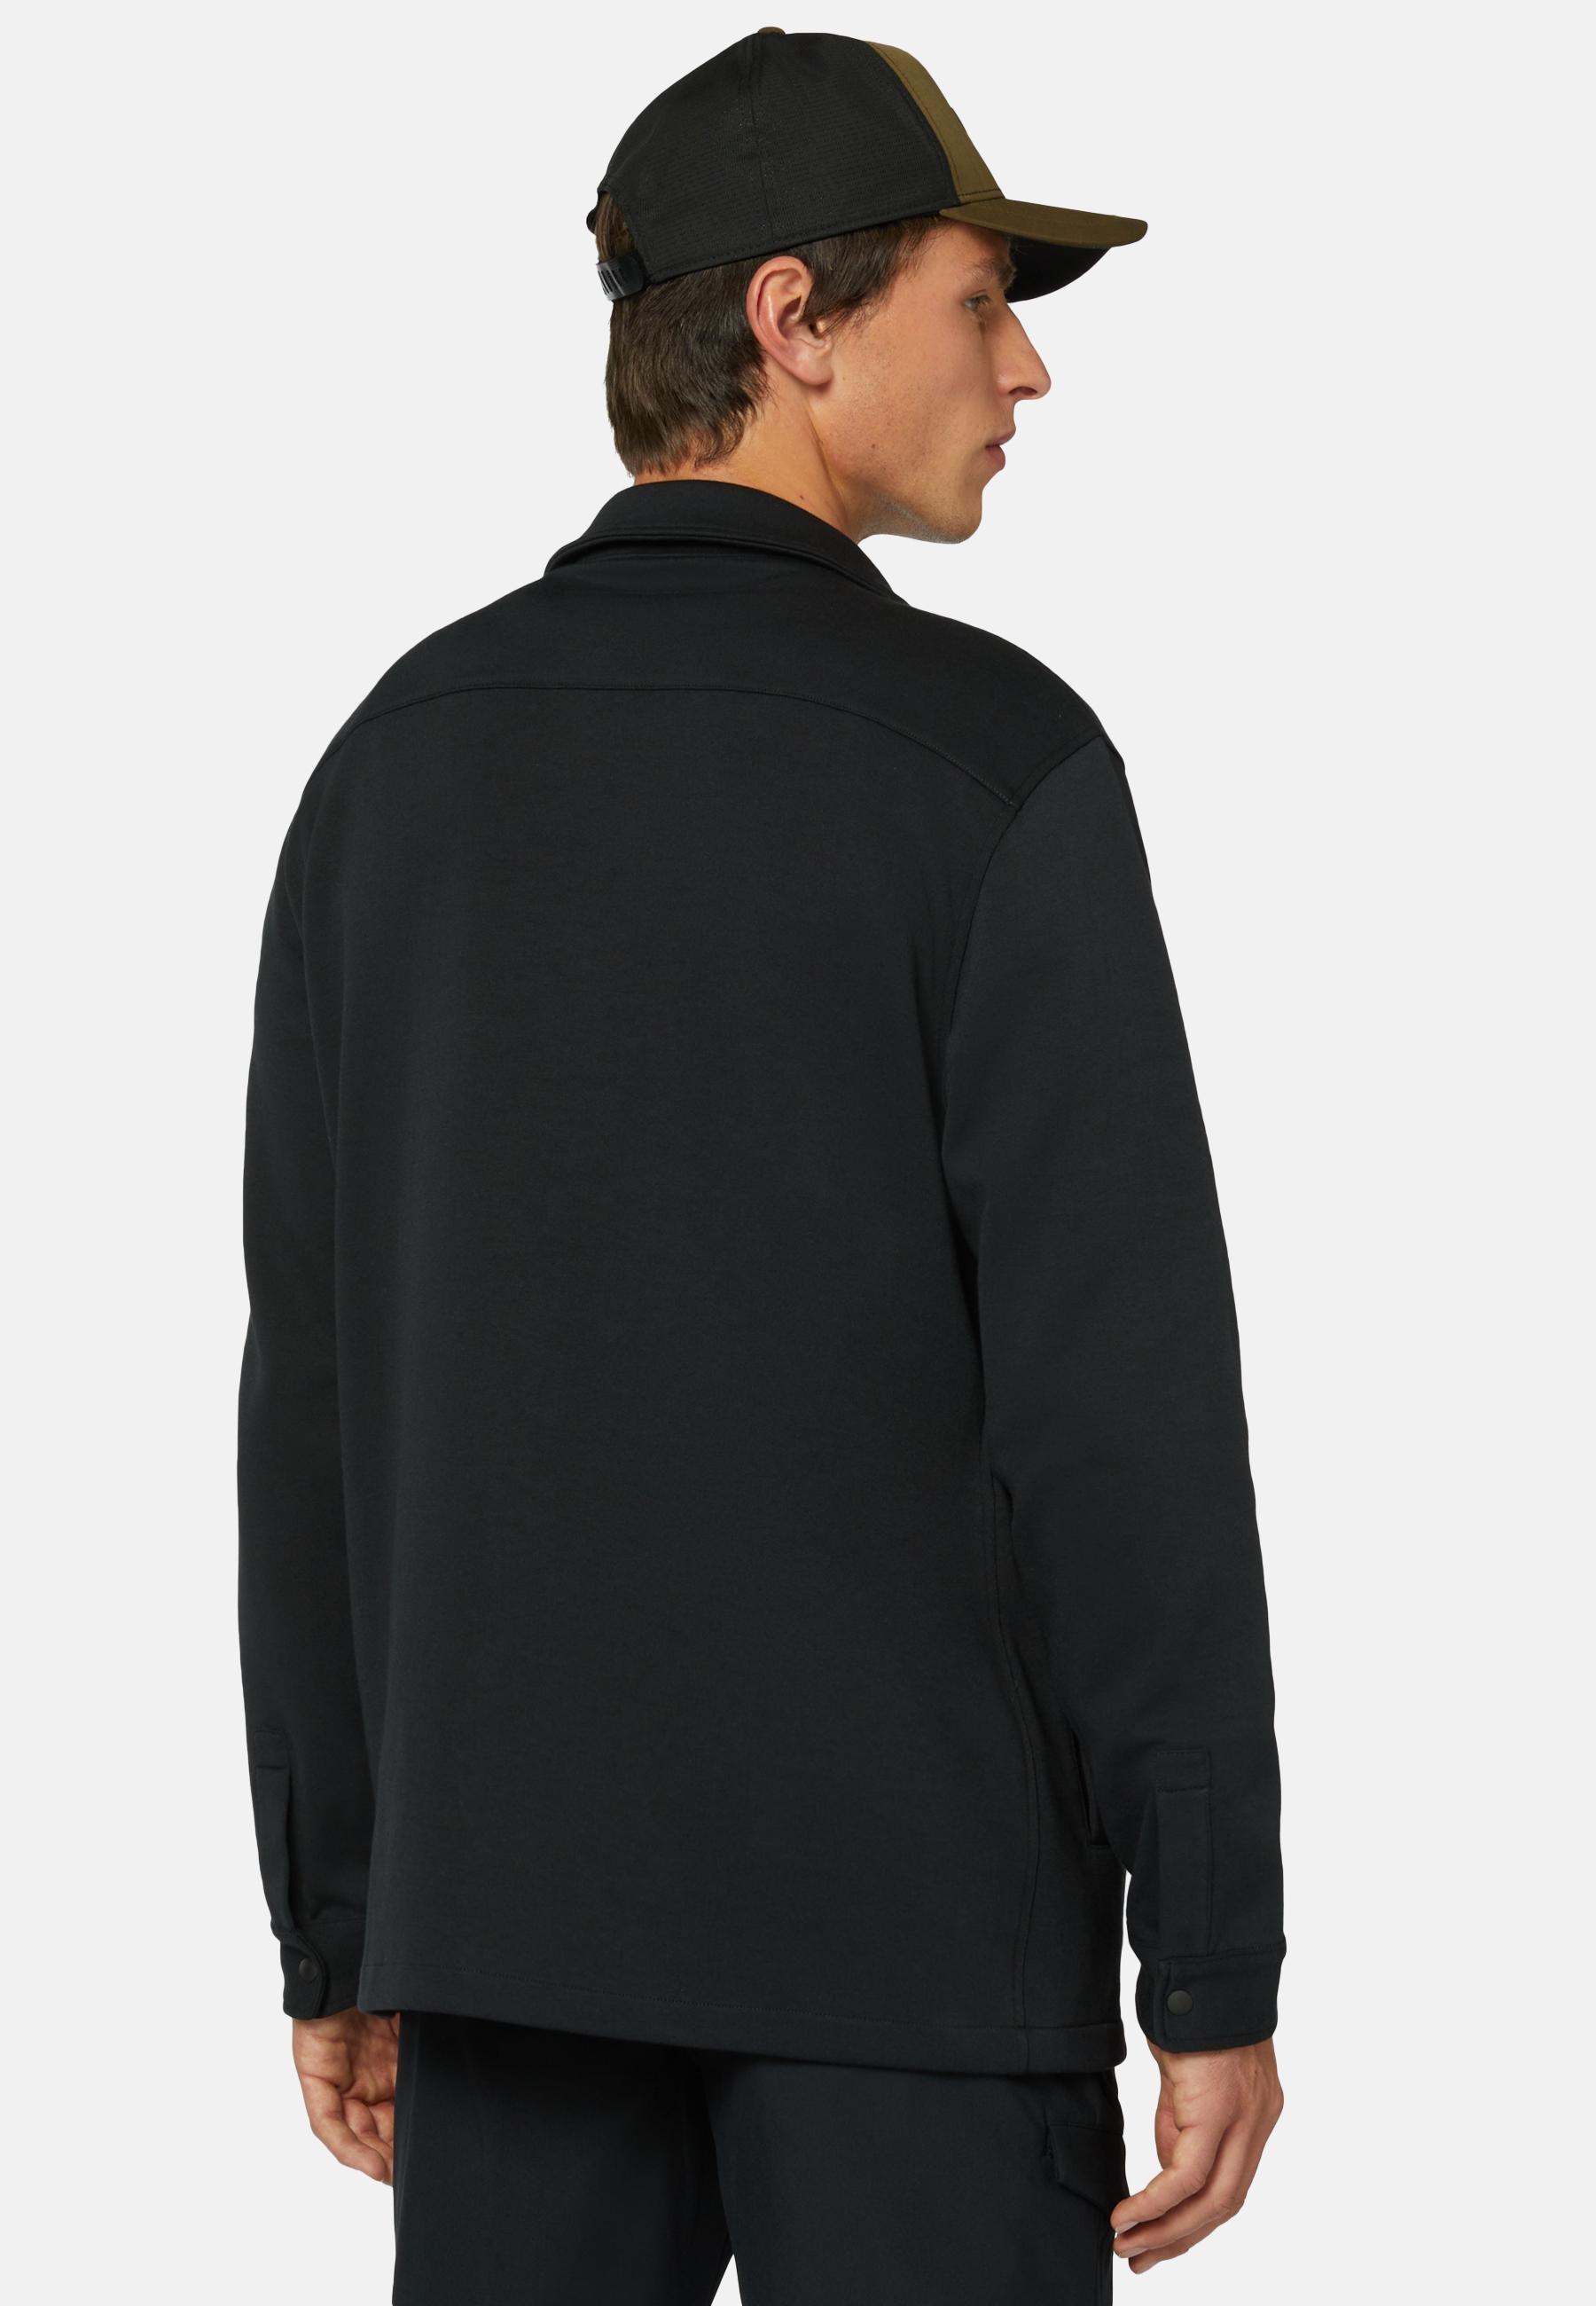 Boggi Milano - Black Sustainable Cotton Link Shirt Jacket